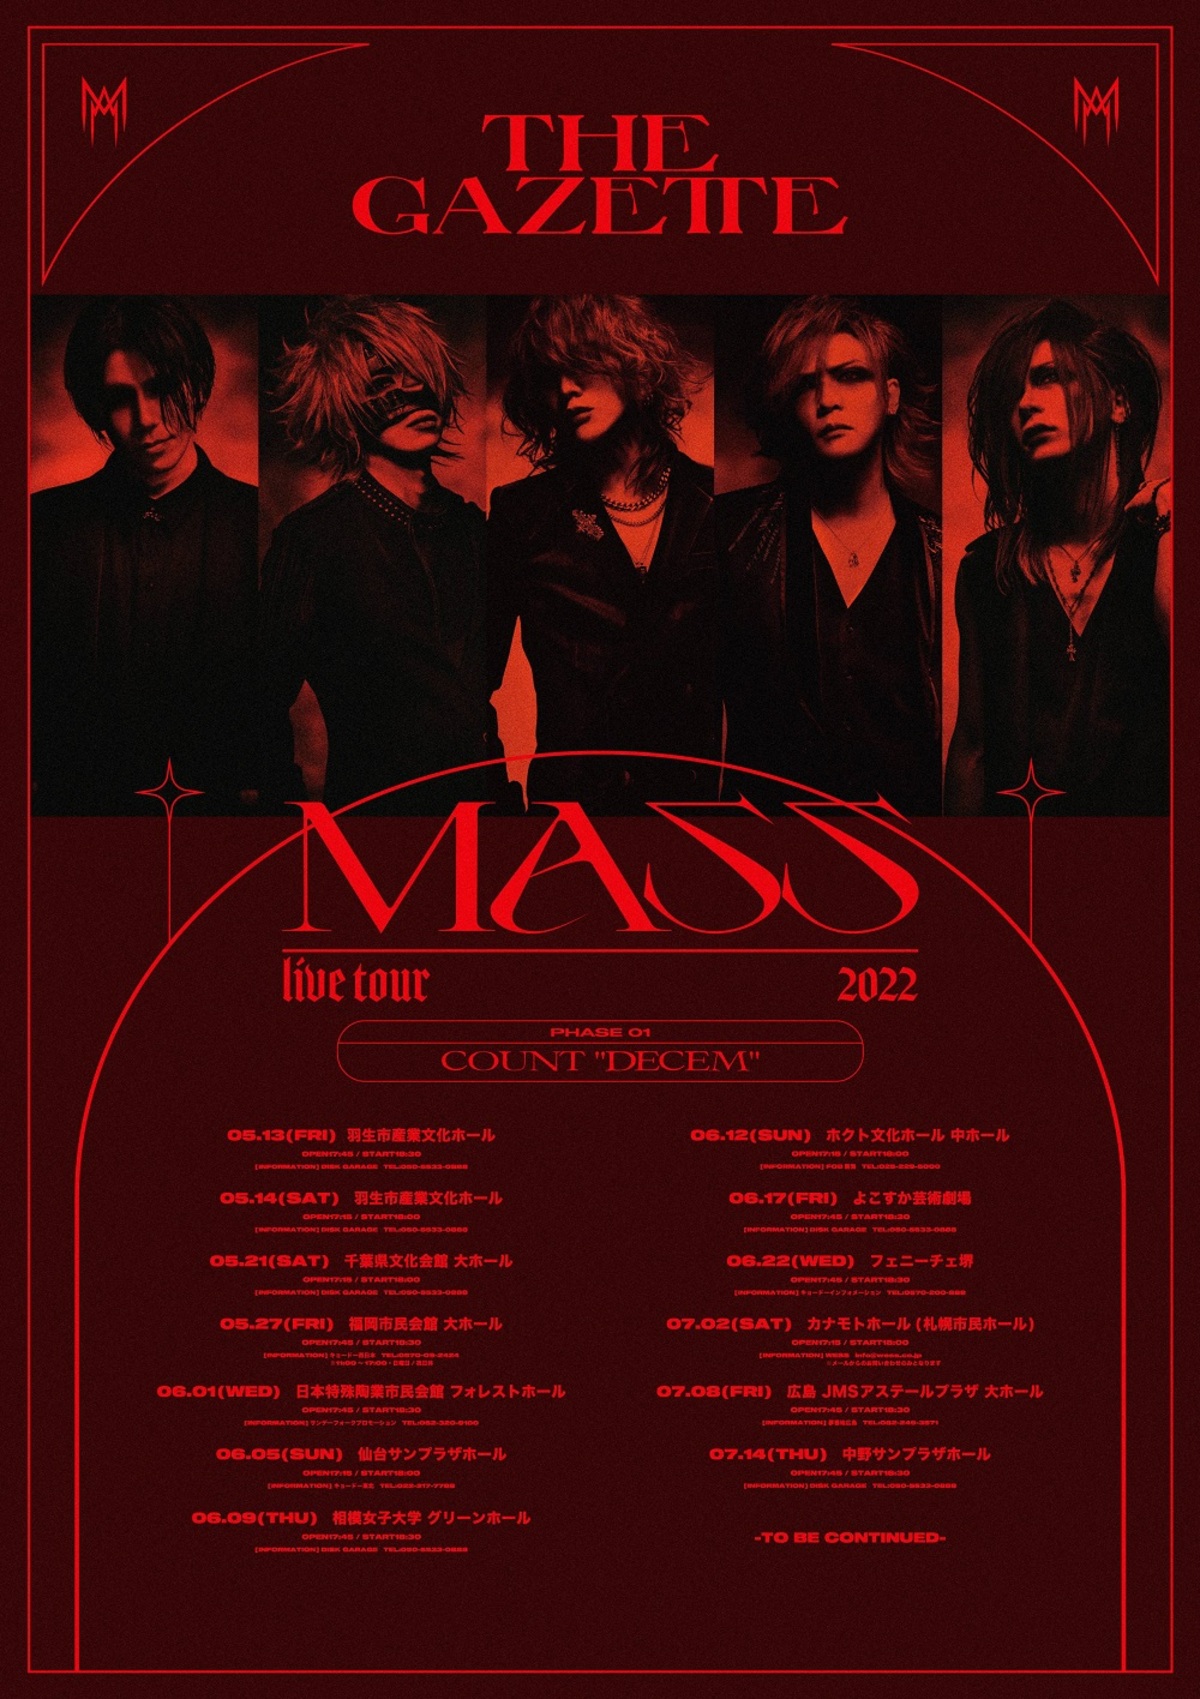 the GazettE、アルバム『MASS』の全貌が明らかとなる全国ツアーを発表